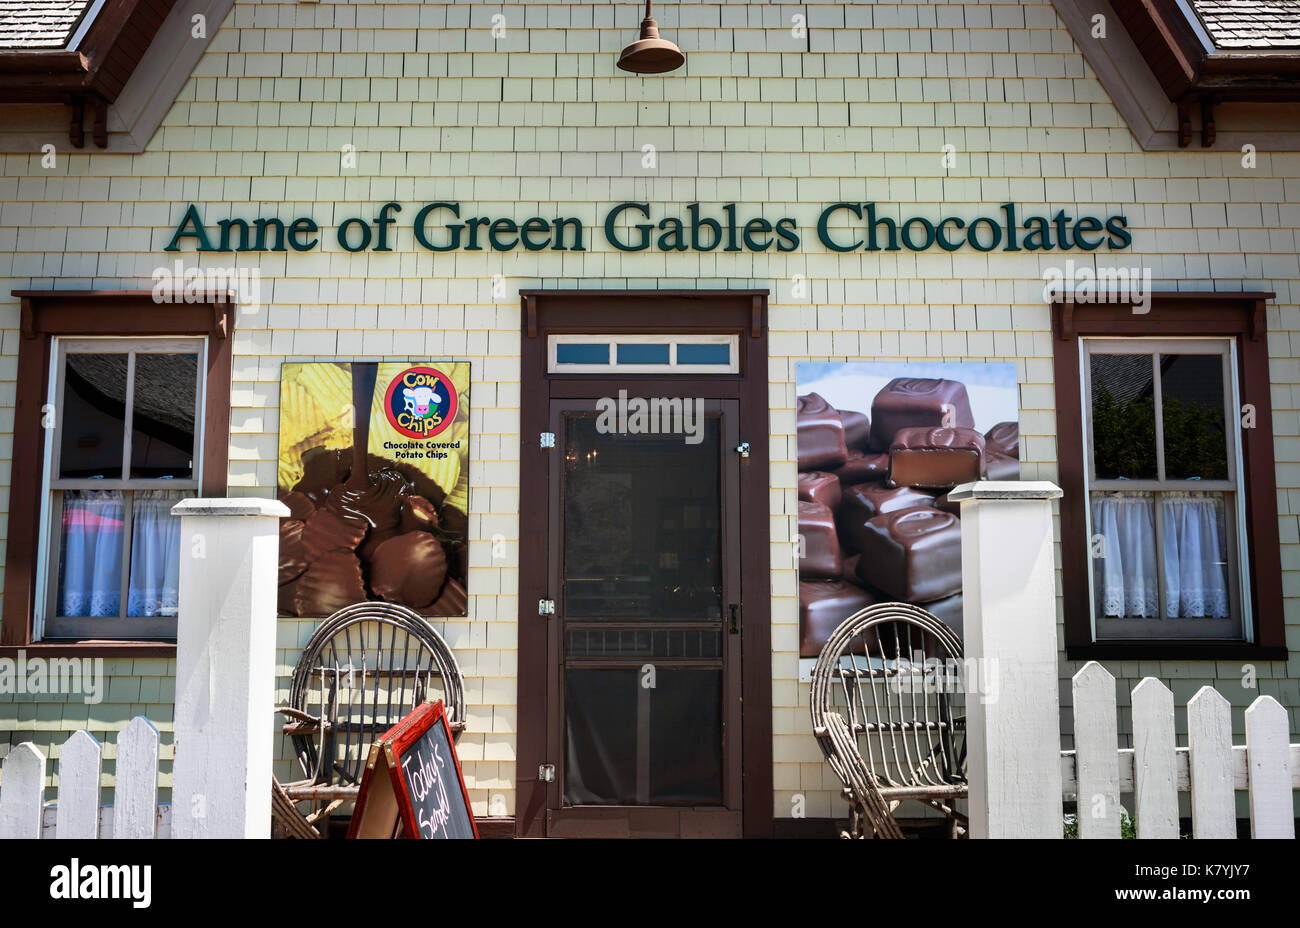 Anne de green gables tienda de chocolates en avonlea, PEI, Canadá. 'Anne' novelas se hizo famosa en 1900 por el escritor de ficción l.m. montgomery Foto de stock